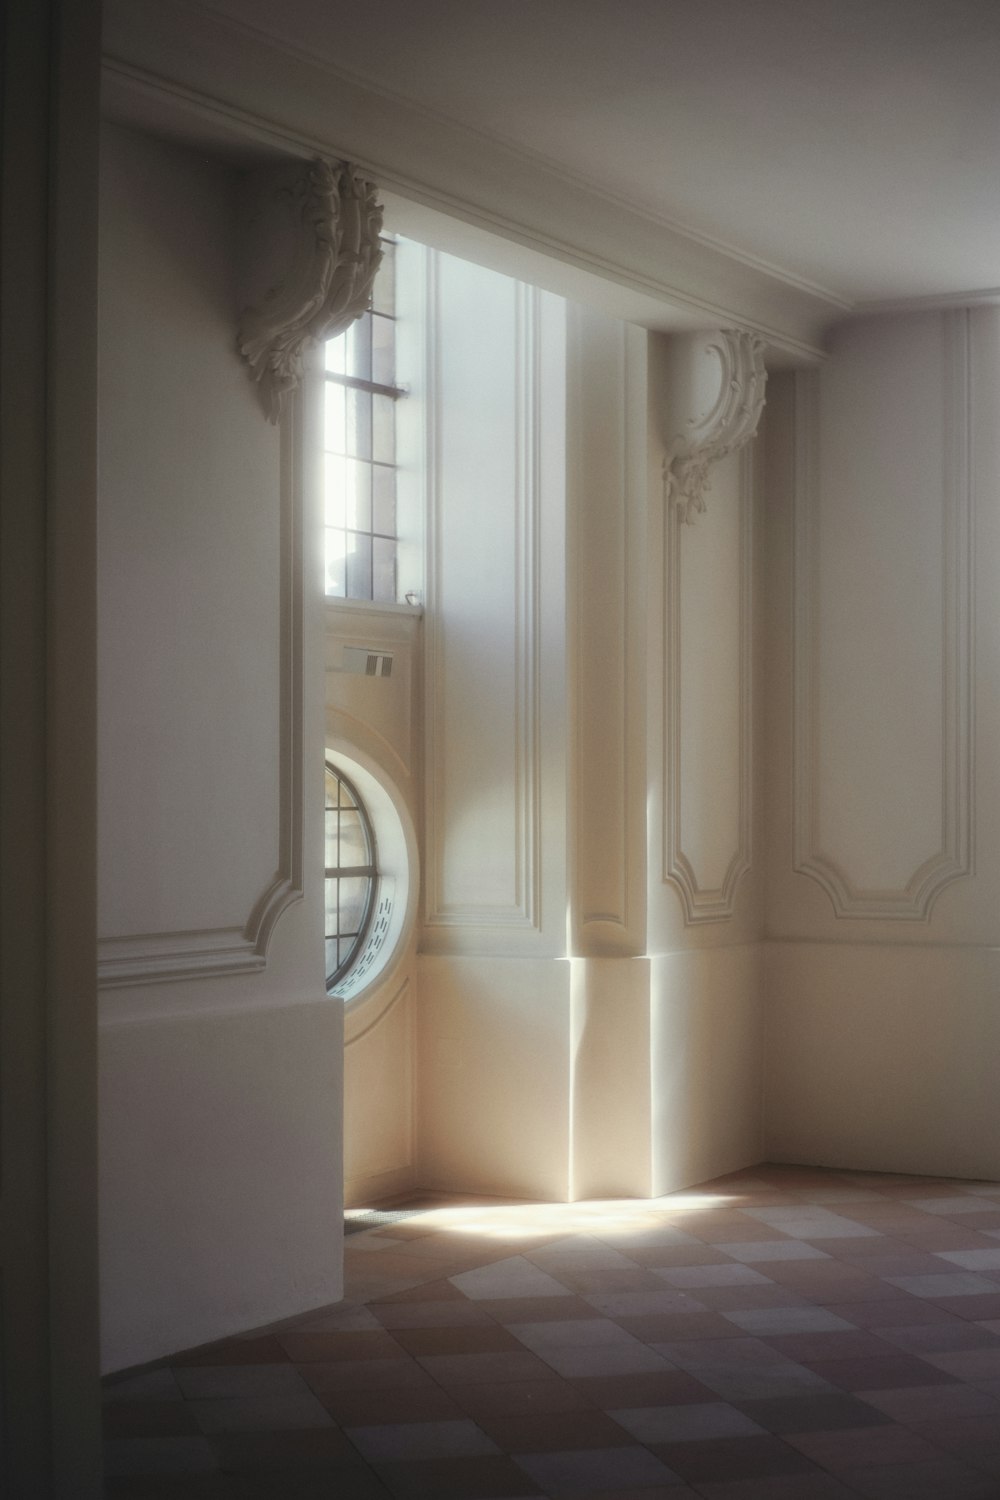 a hallway with a window